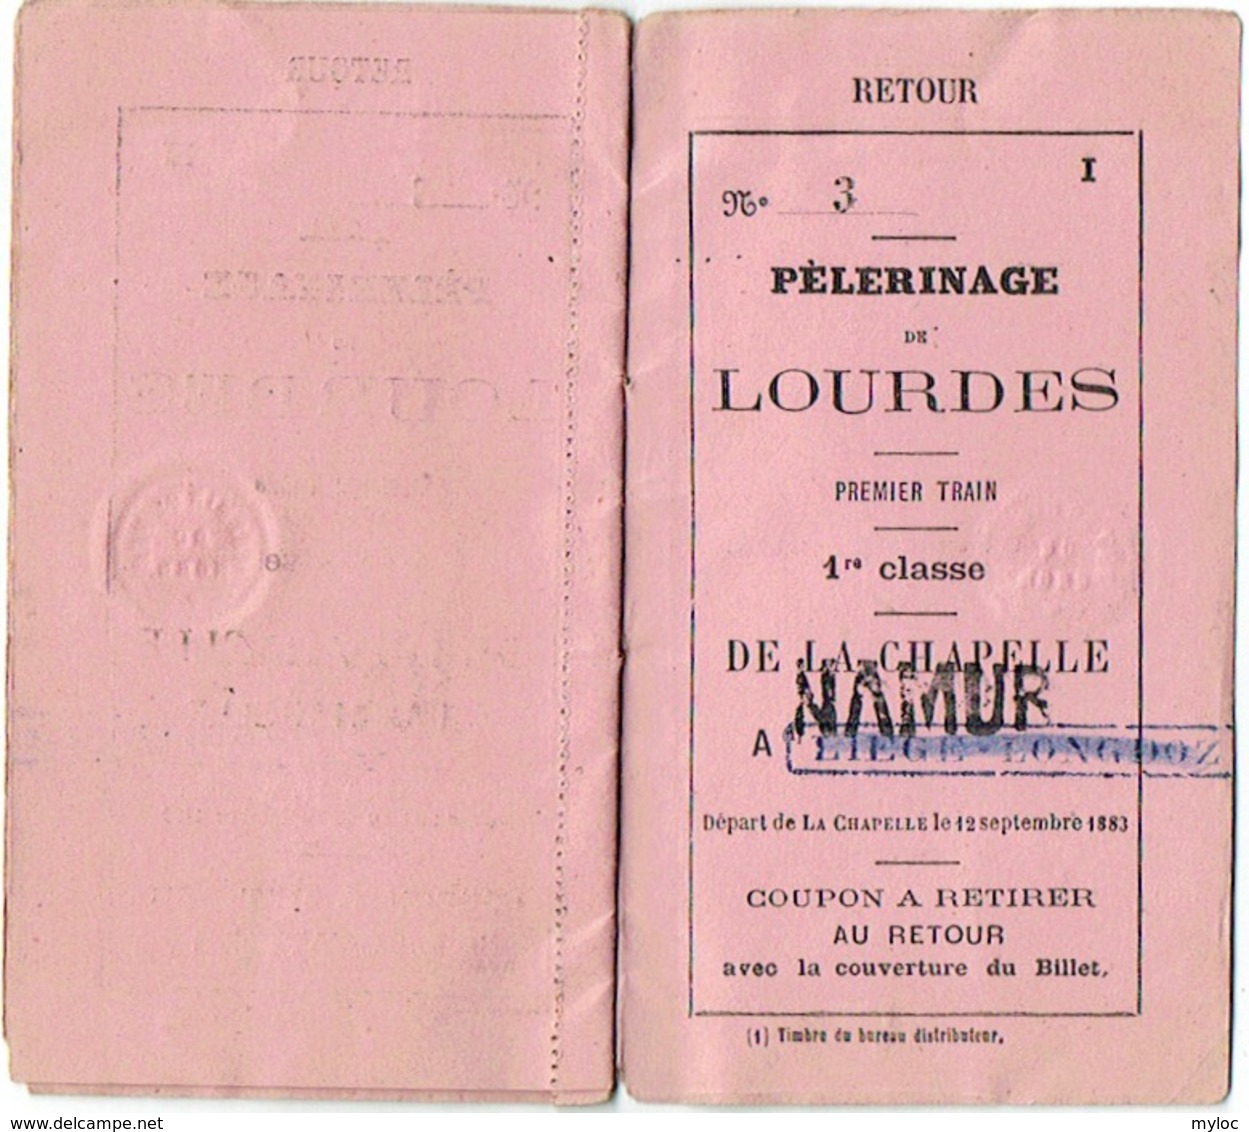 Chemin De Fer. Carnet De Coupons. Pélerinage De Lourdes. Train 1re Classe De Liège à Lourdes  1883. - Europa